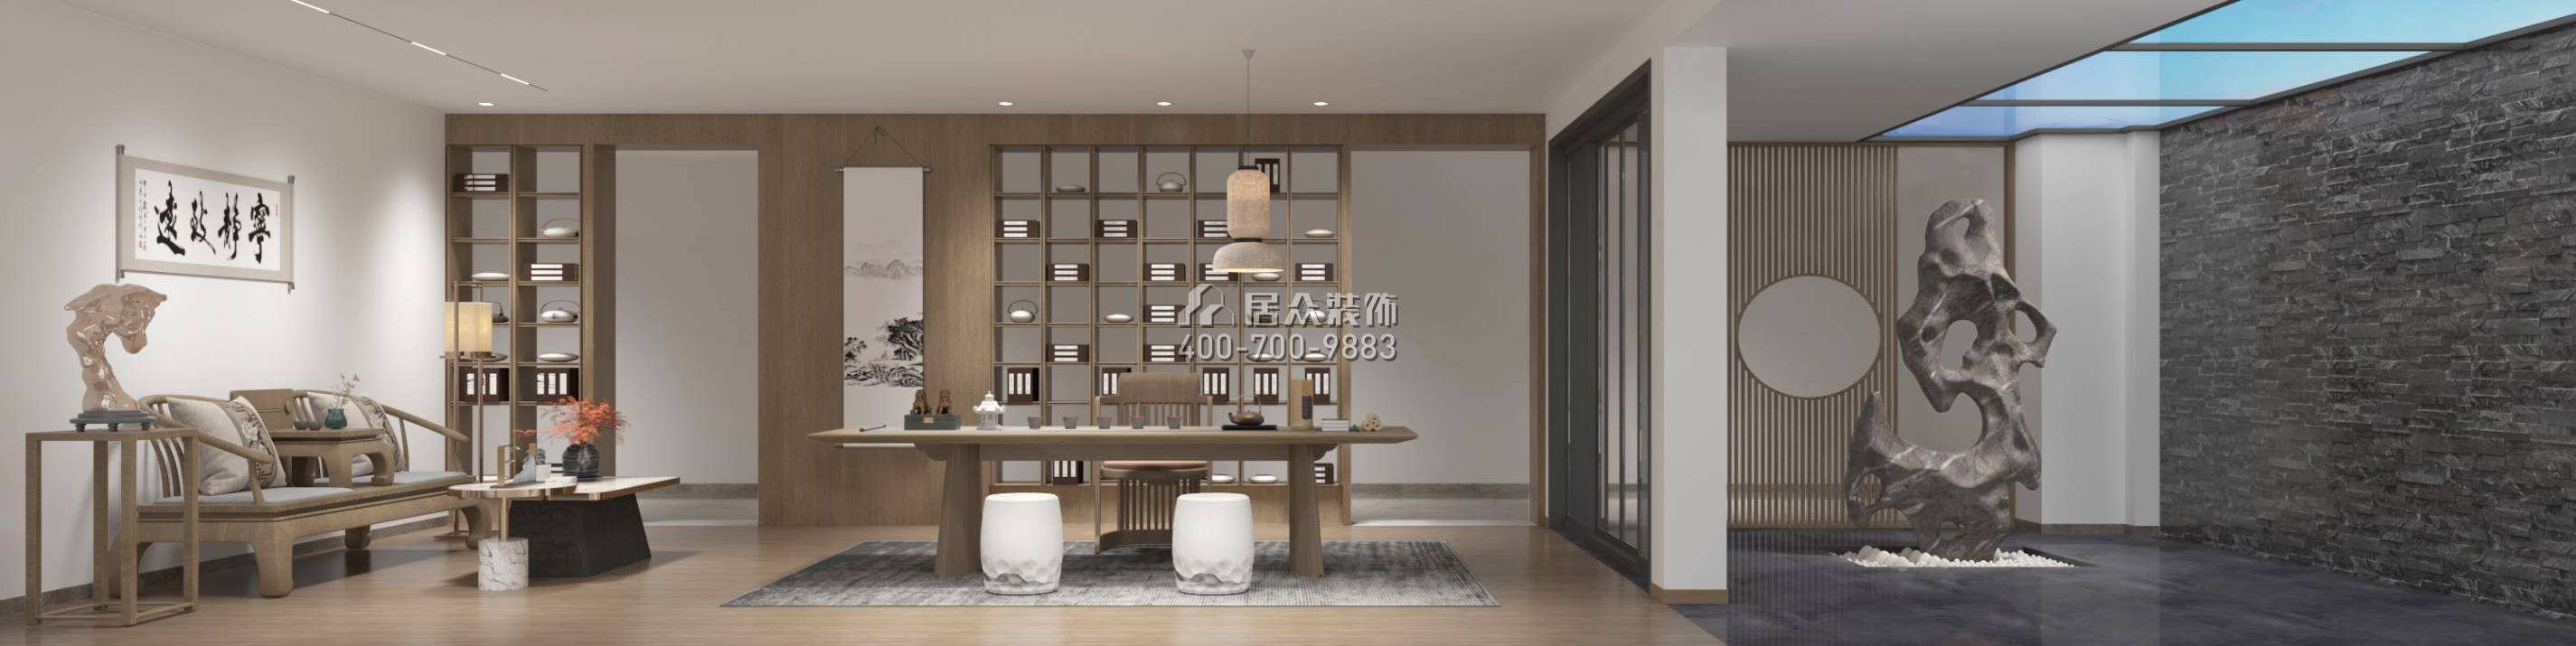 中信紅樹灣-三期638平方米現代簡約風格復式戶型客餐廳一體裝修效果圖